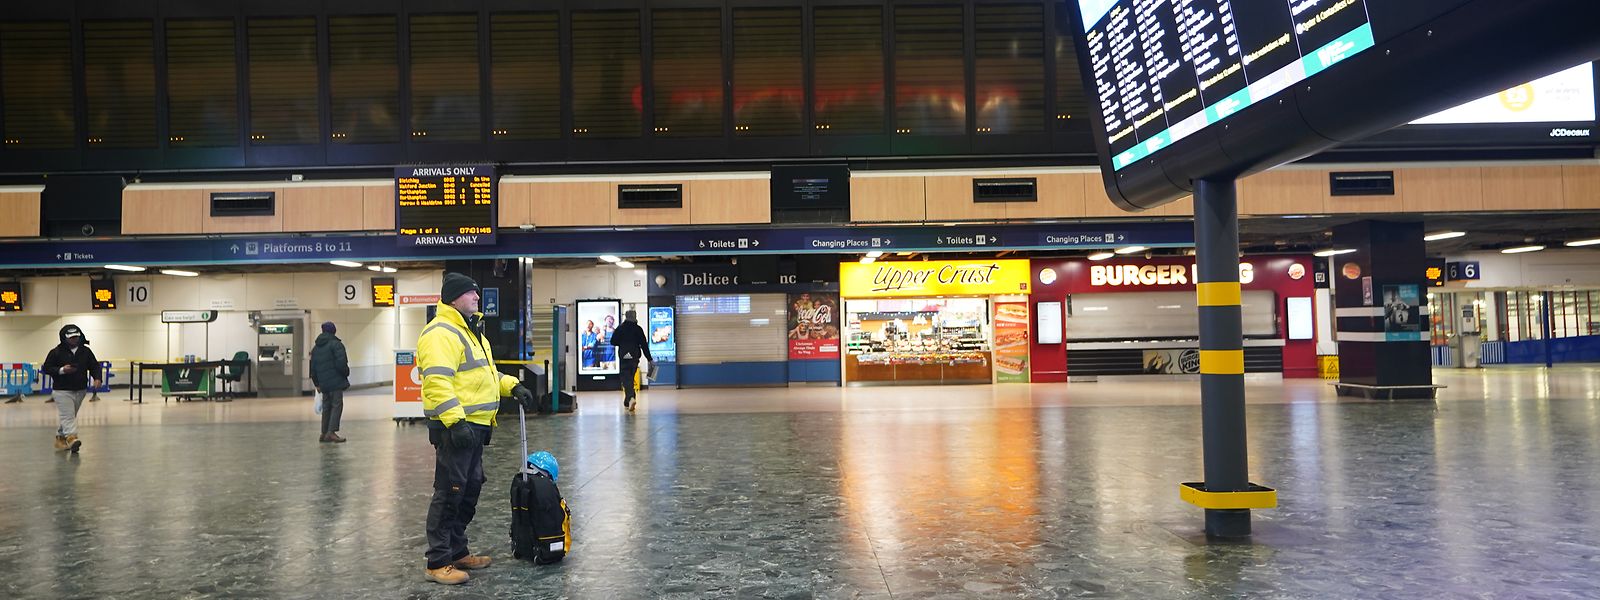 Ein Mann betrachtet die Abfahrtstafel im Bahnhof Euston in London während eines Streiks. Das öffentliche Leben steht still.